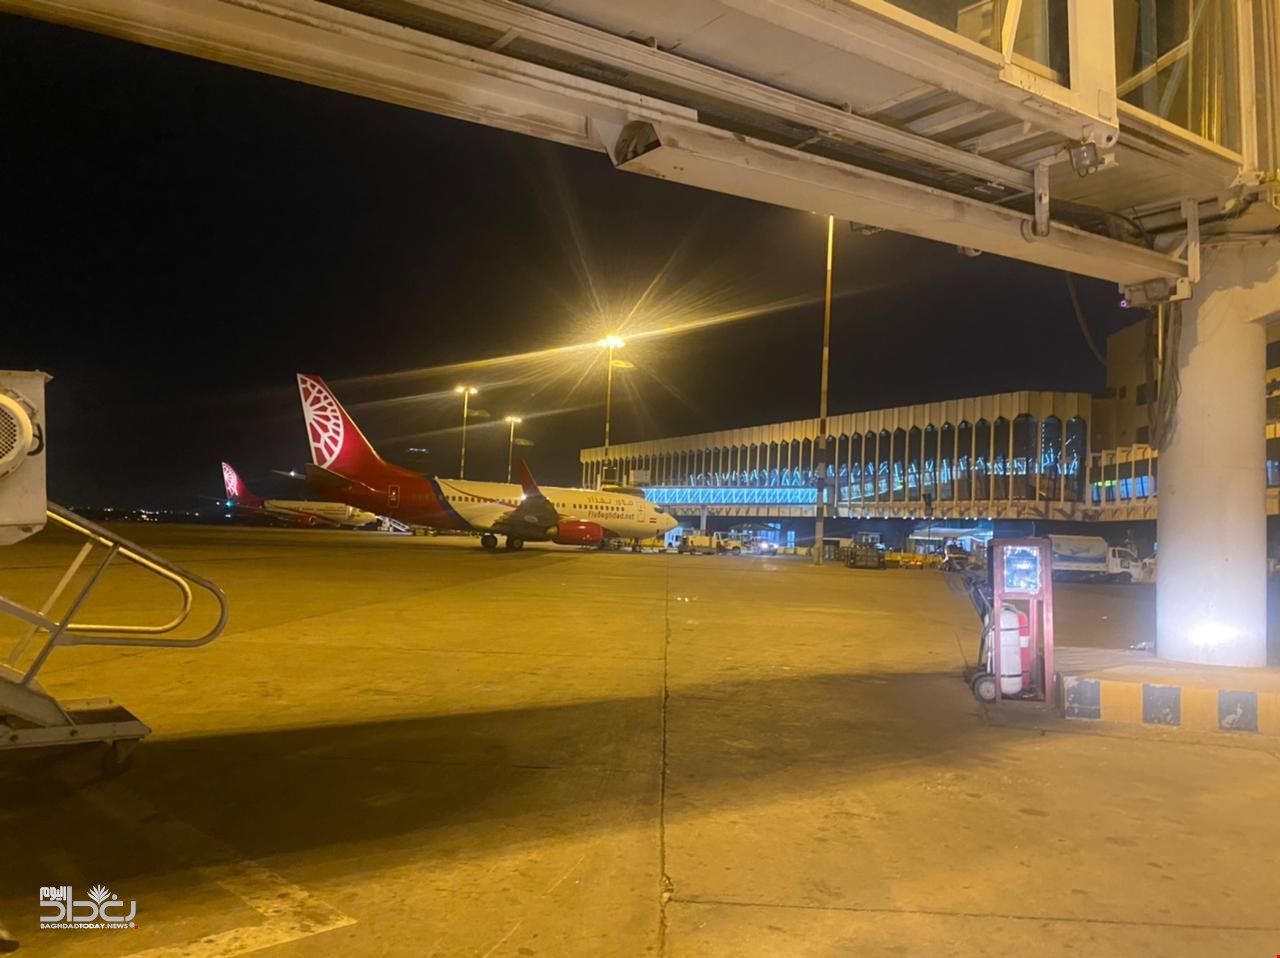 الصور الأولى لانفجار طائرة مسيرة قرب قاعدة جوية داخل مطار بغداد